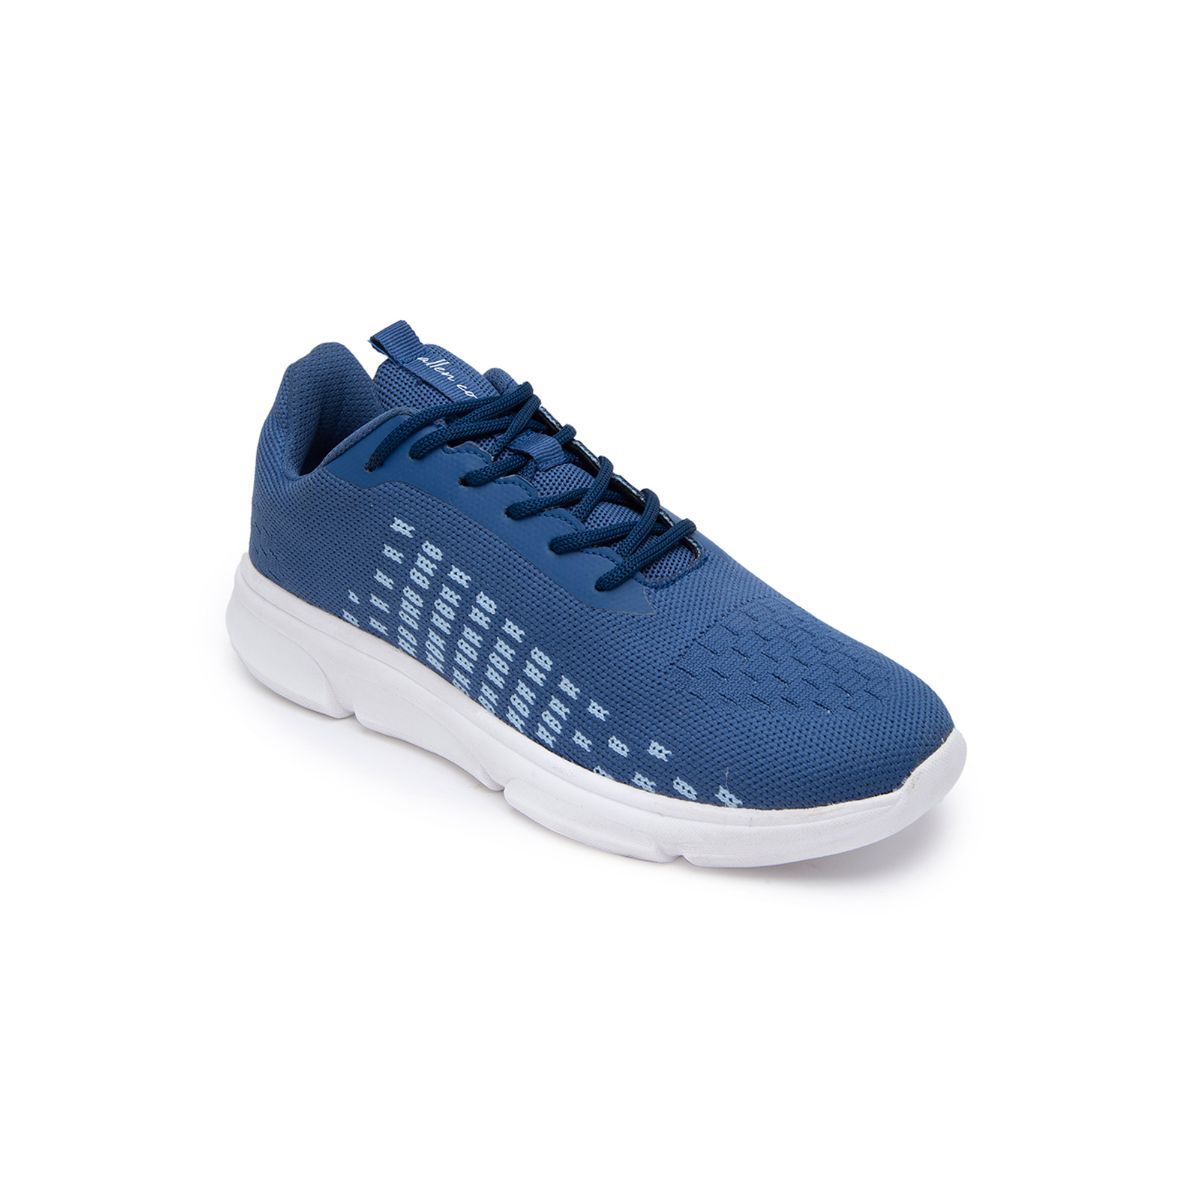 Allen Cooper Blue Mesh Sports Shoes - 8